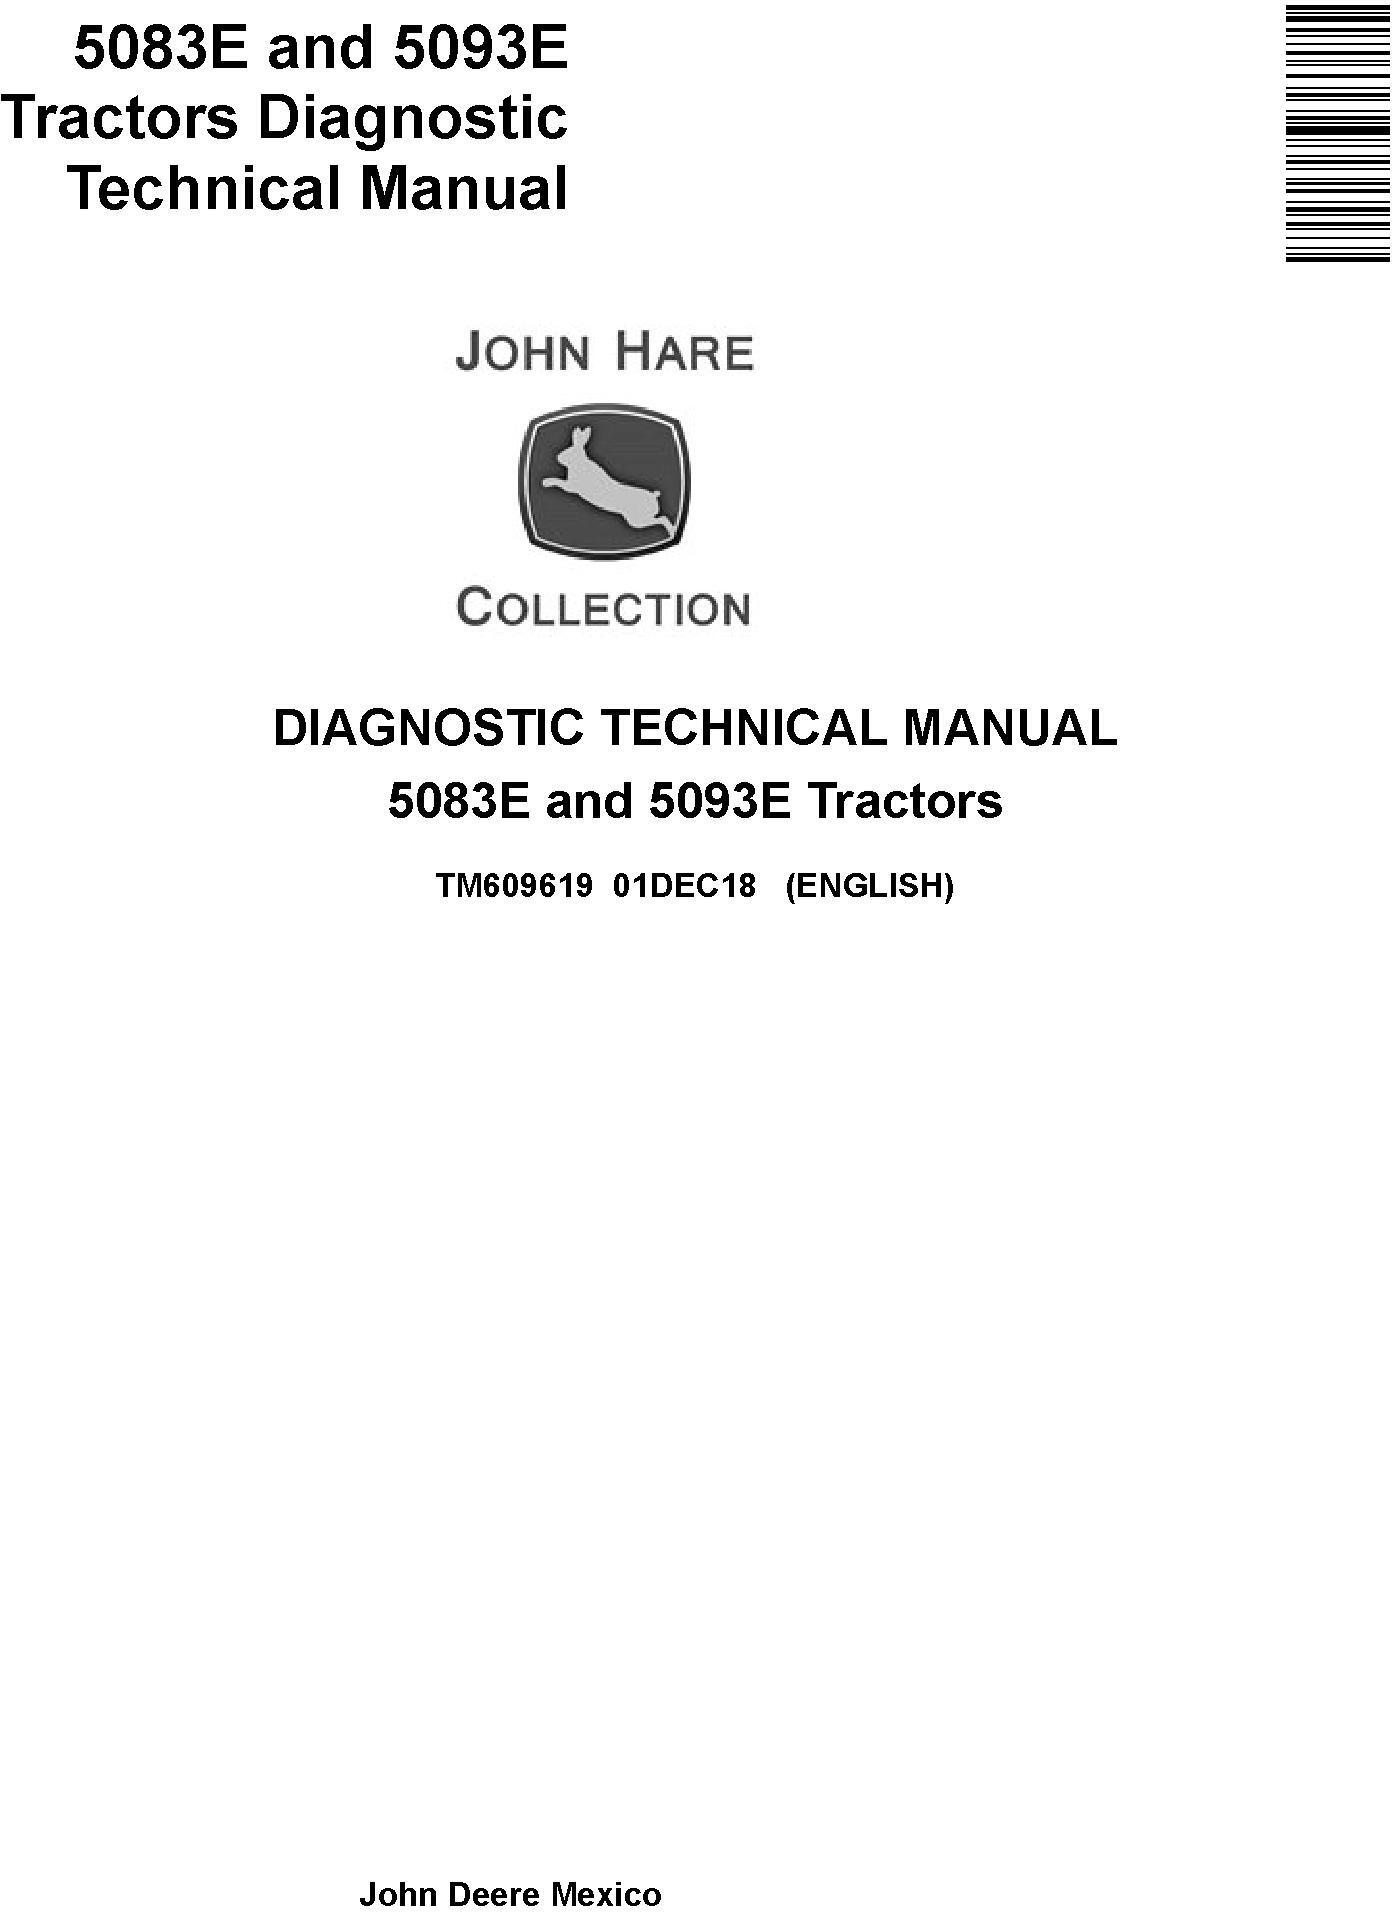 John Deere 5083E and 5093E Tractors Diagnostic Technical Service Manual (TM609619) - 19118